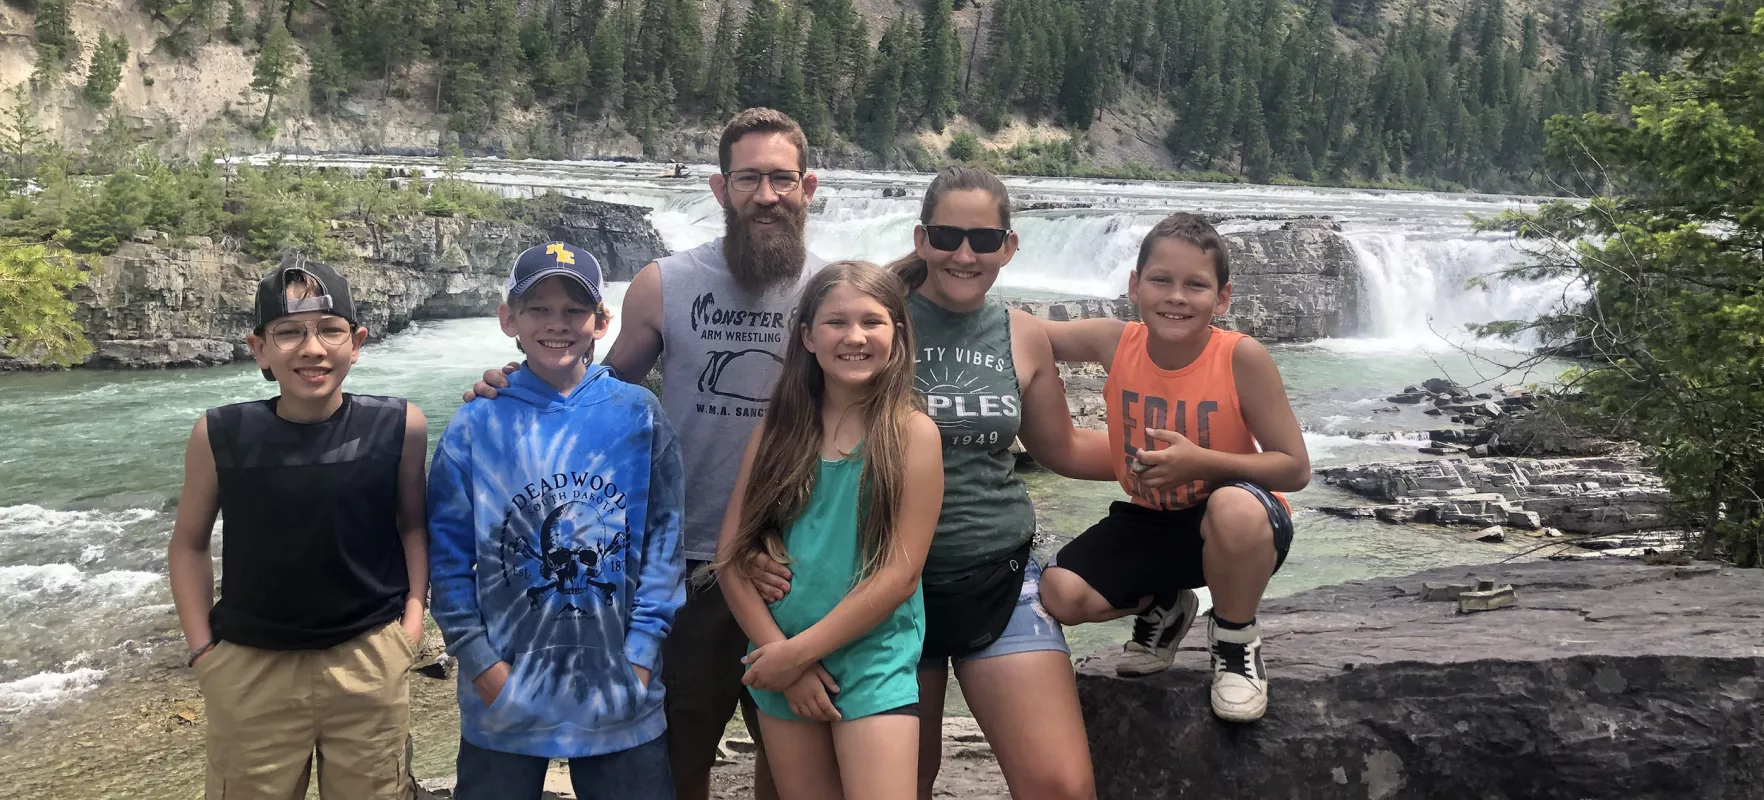 Nathan McDonald and his family enjoying vacation